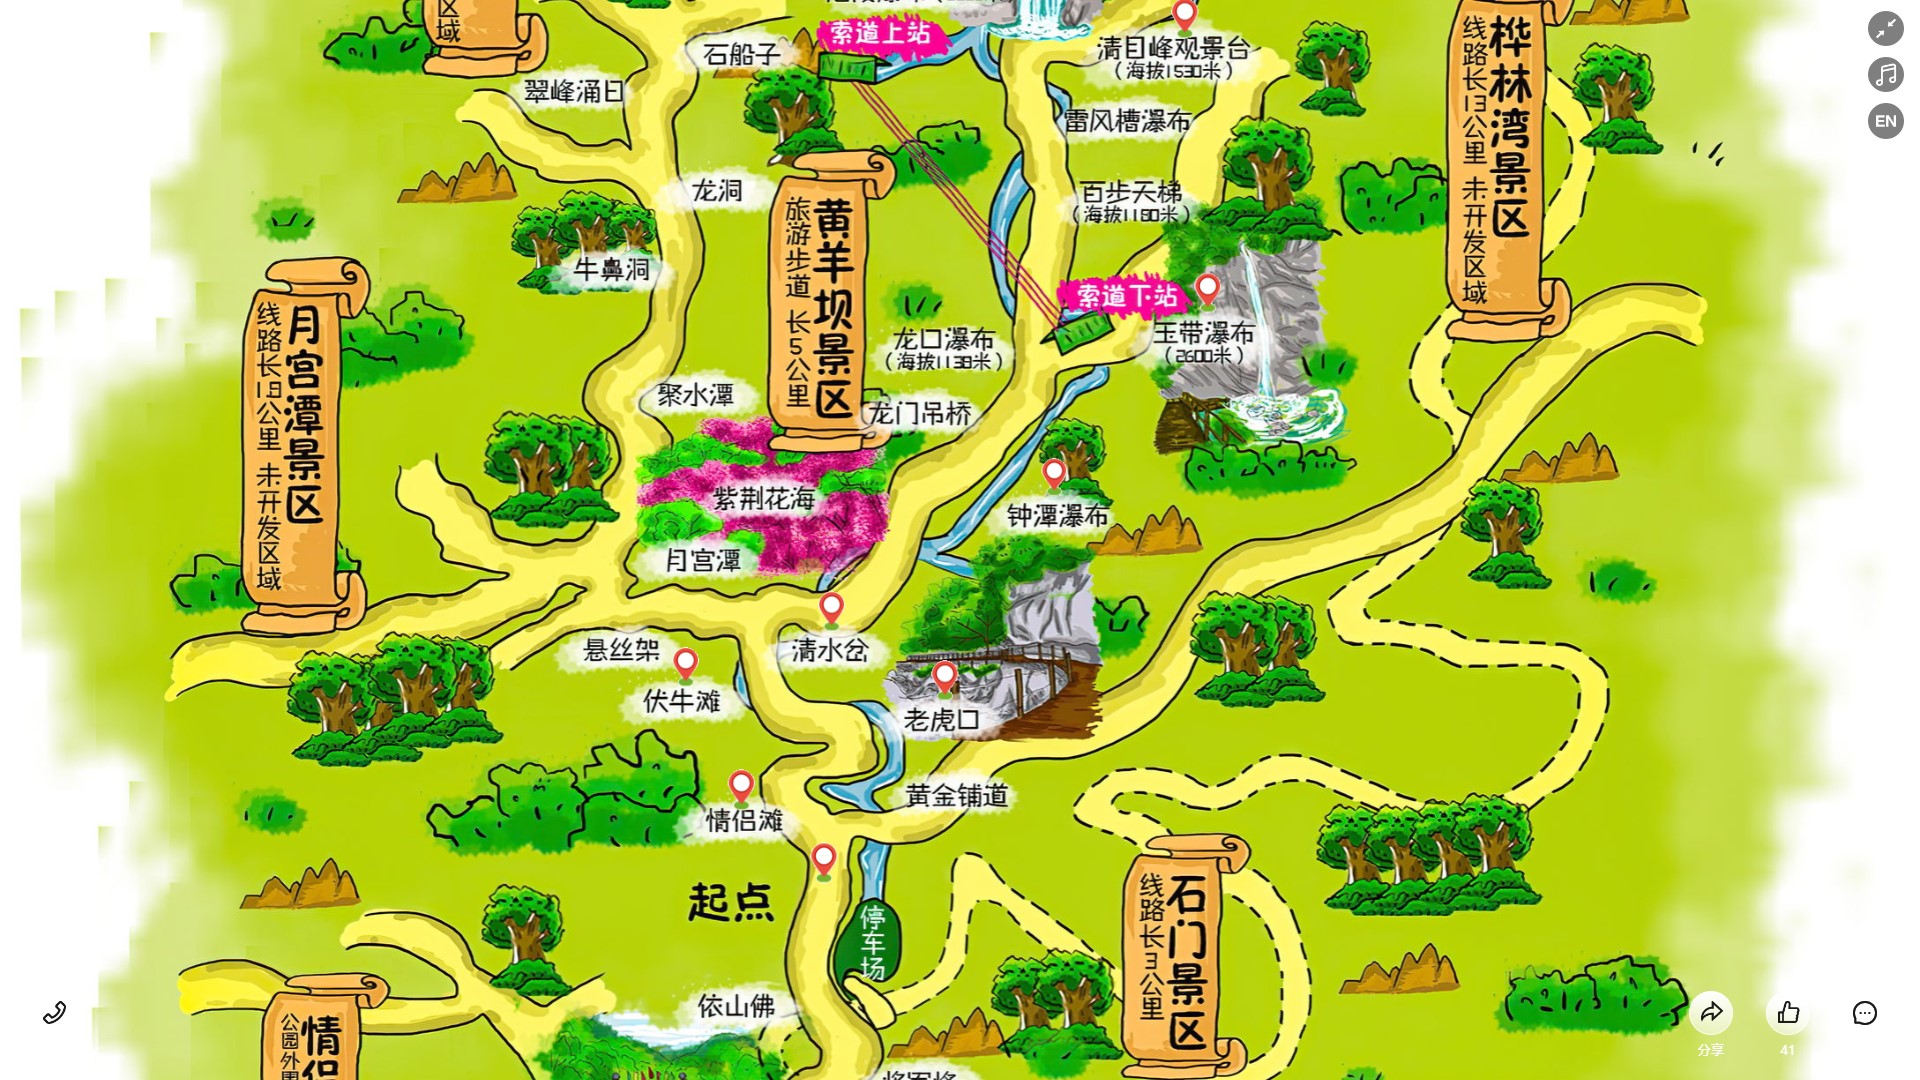 松山湖管委会景区导览系统